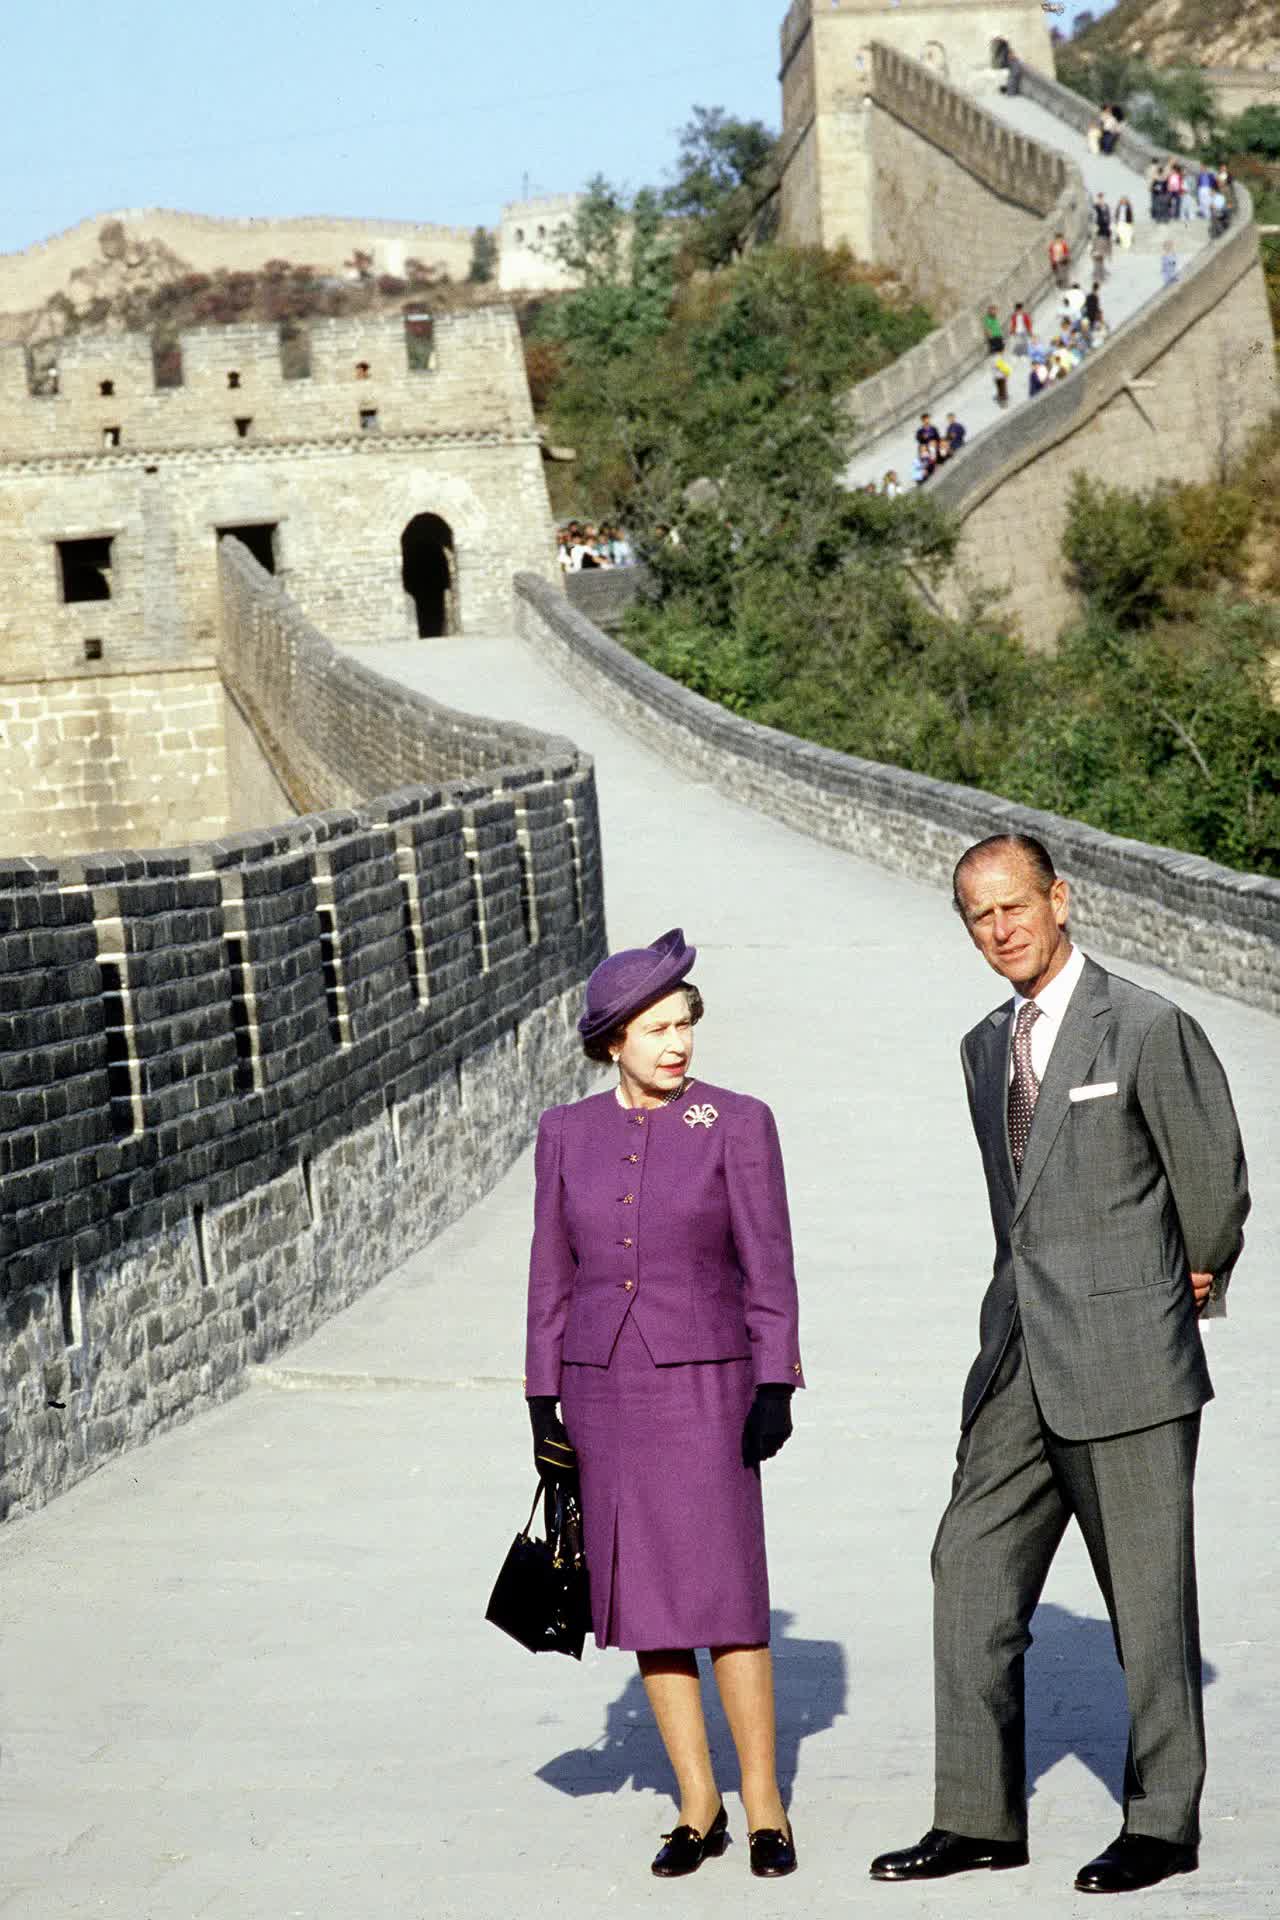 Принц Филипп и королева Елизавета II во время посещения Великой Китайской стены, 1986 год 